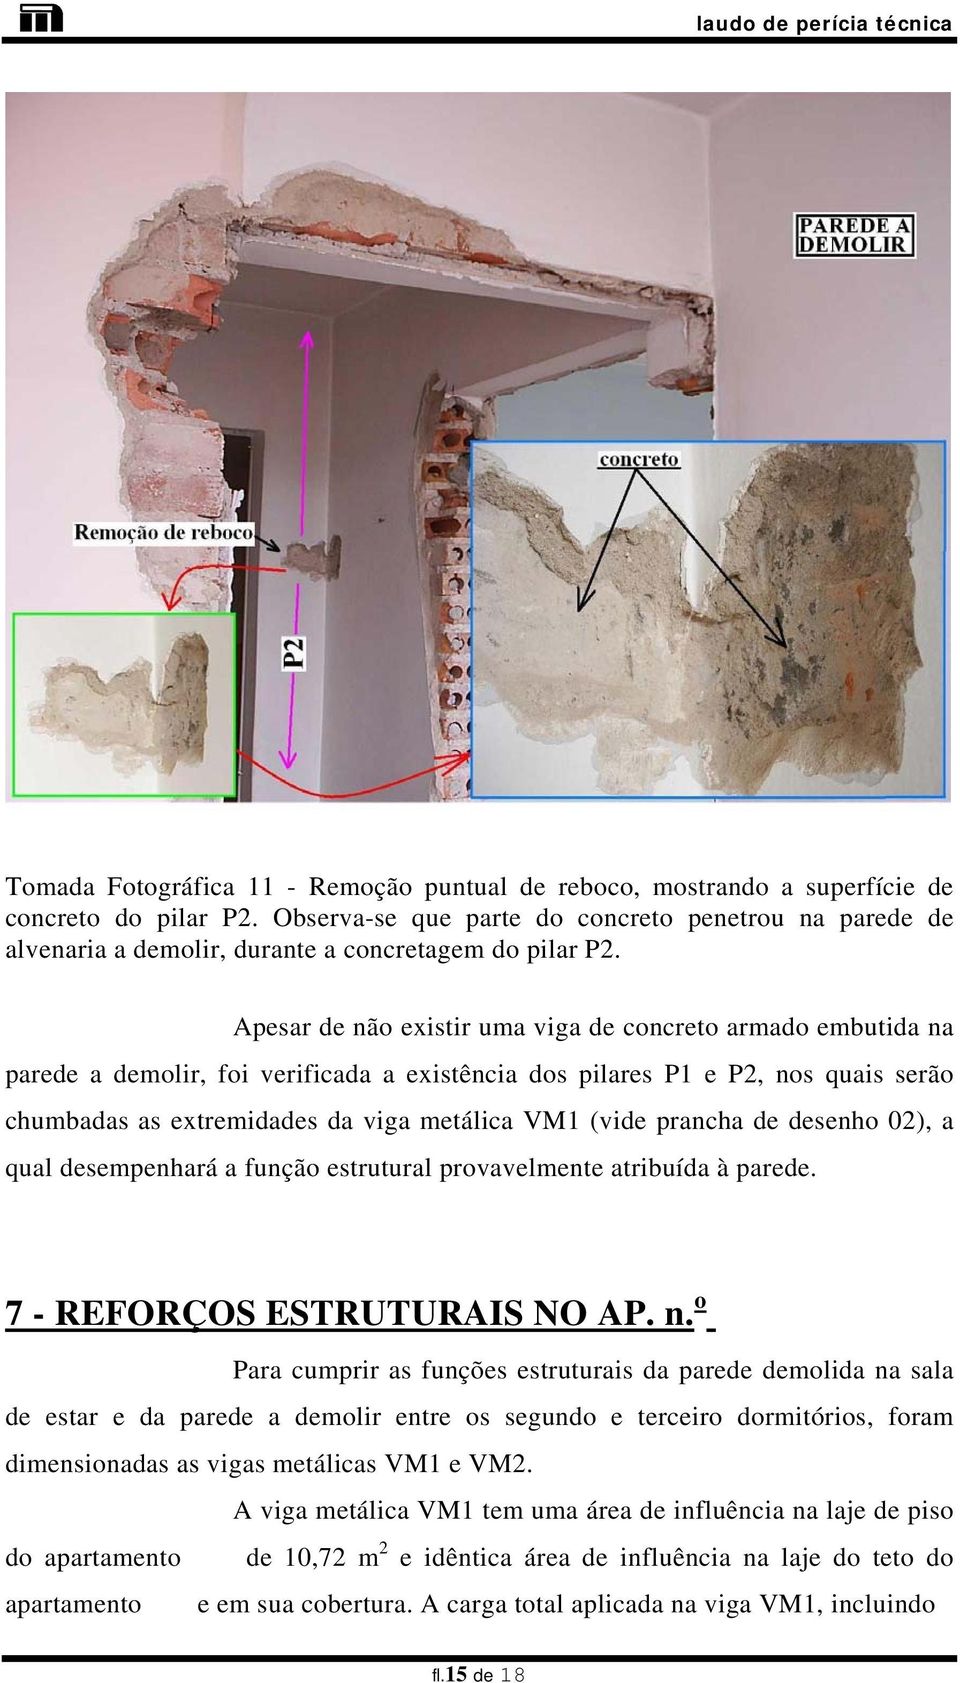 Apesar de não eistir uma viga de concreto armado embutida na parede a demolir, foi verificada a eistência dos pilares P1 e P2, nos quais serão chumbadas as etremidades da viga metálica VM1 (vide